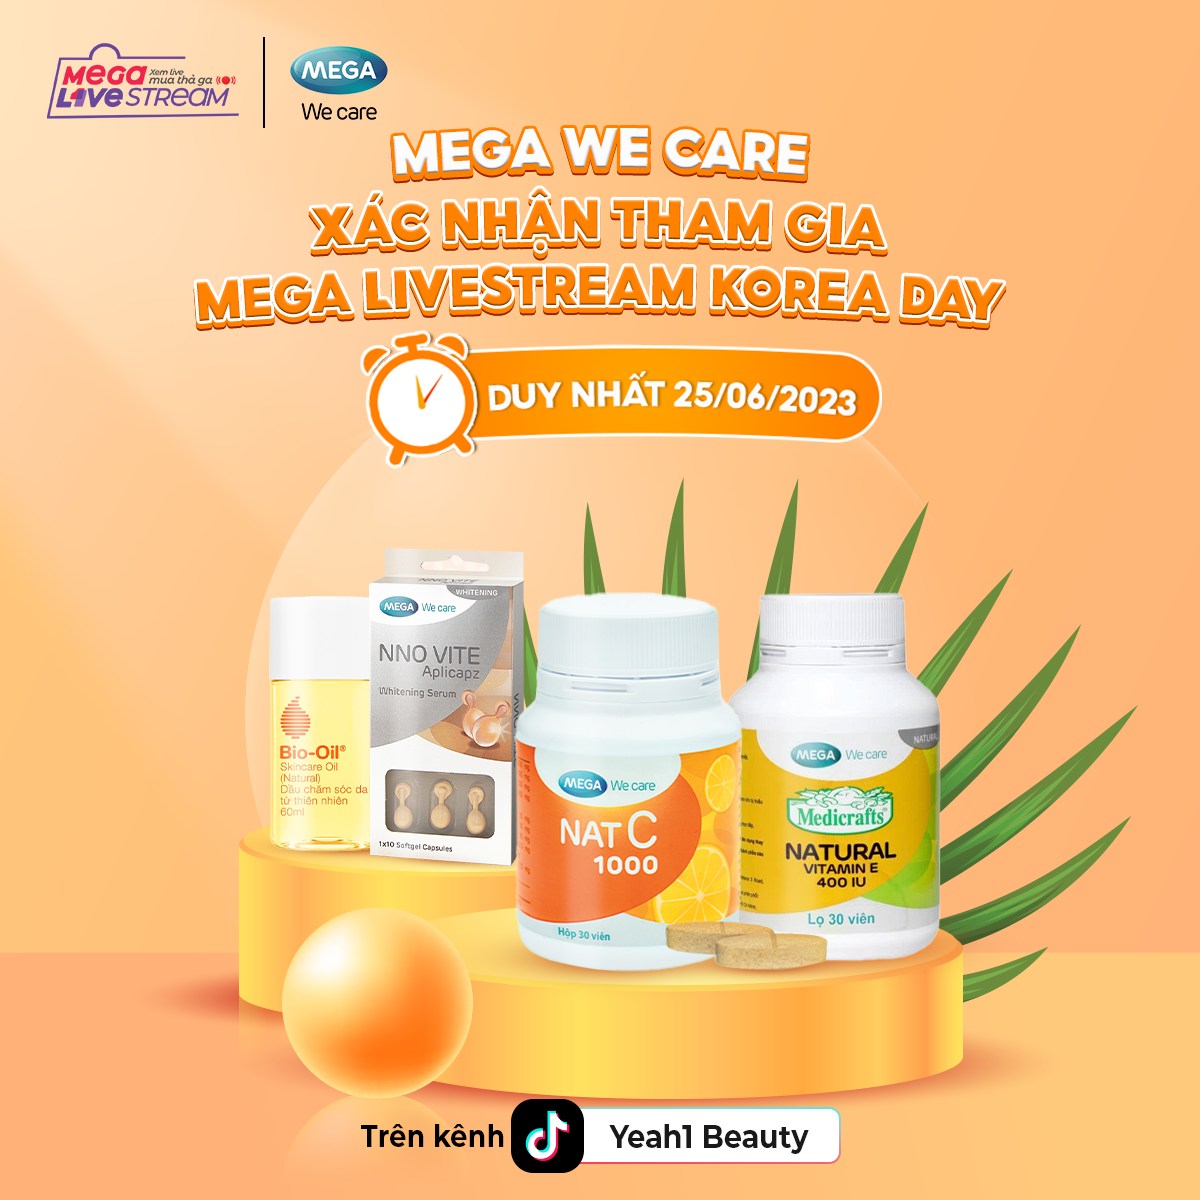 Mega We Care là đơn vị uy tín trong lĩnh vực y tế và chăm sóc sức khỏe trên toàn cầu.